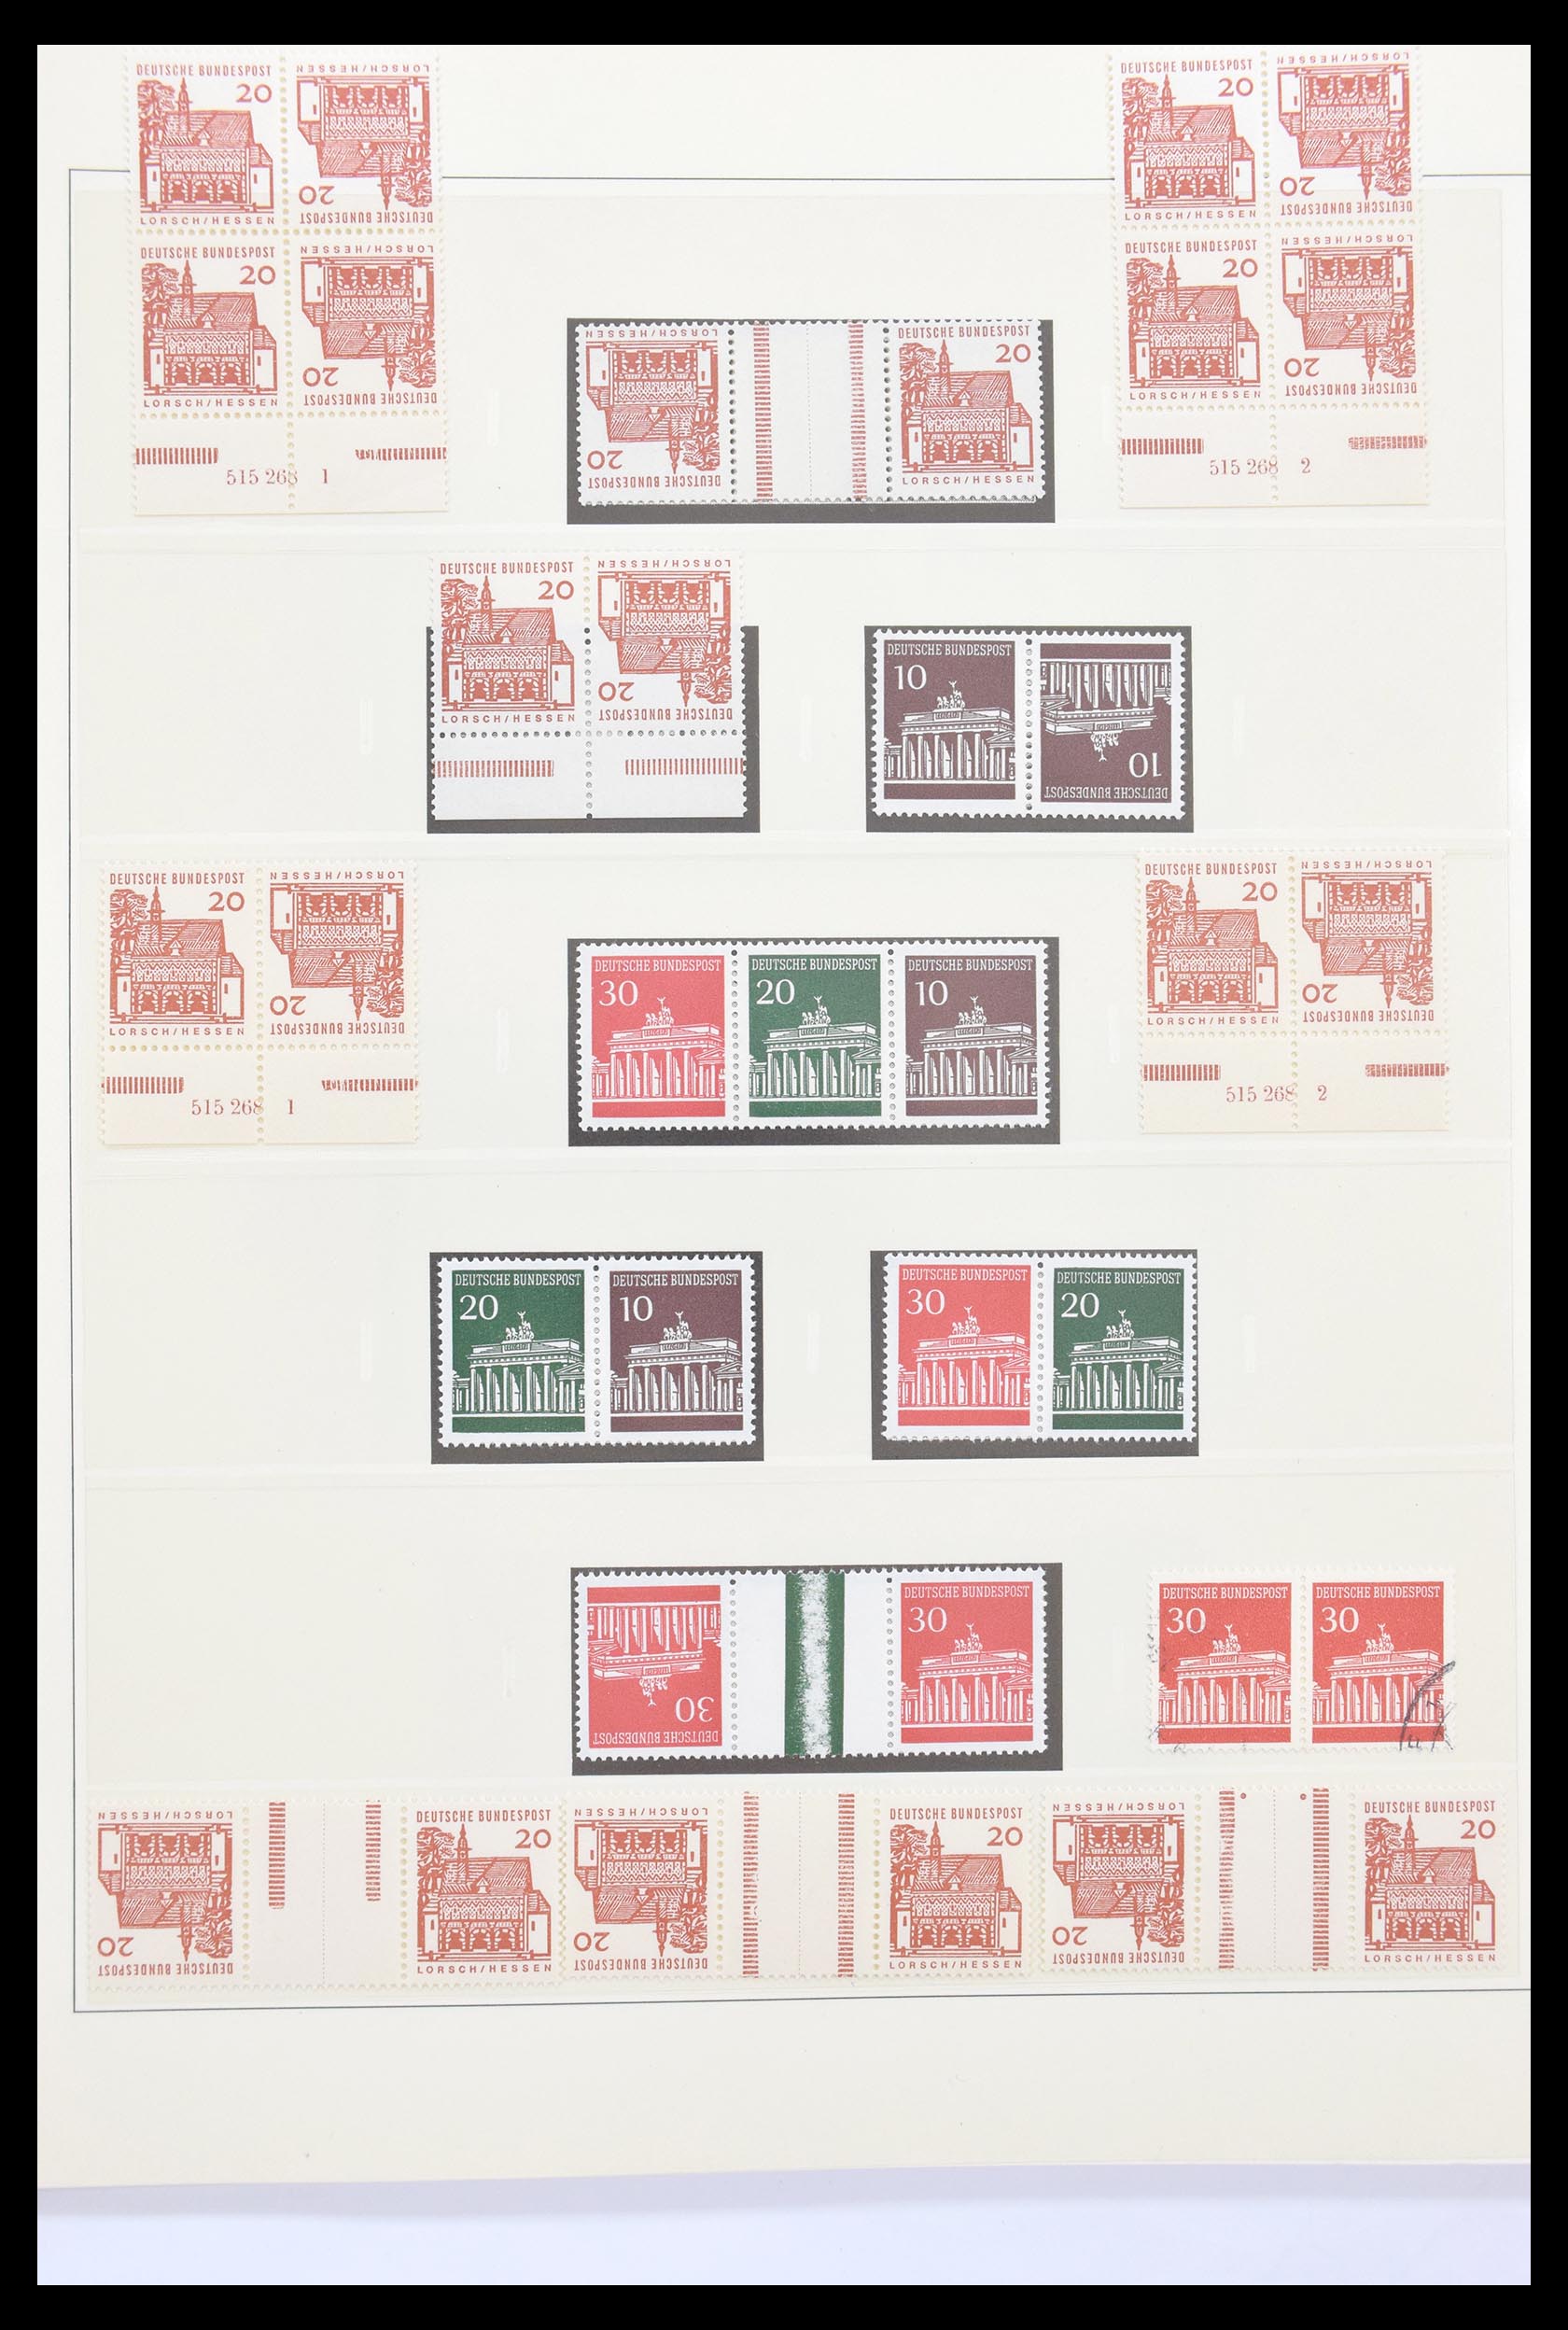 30605 023 - 30605 Bundespost combinations 1951-1974.